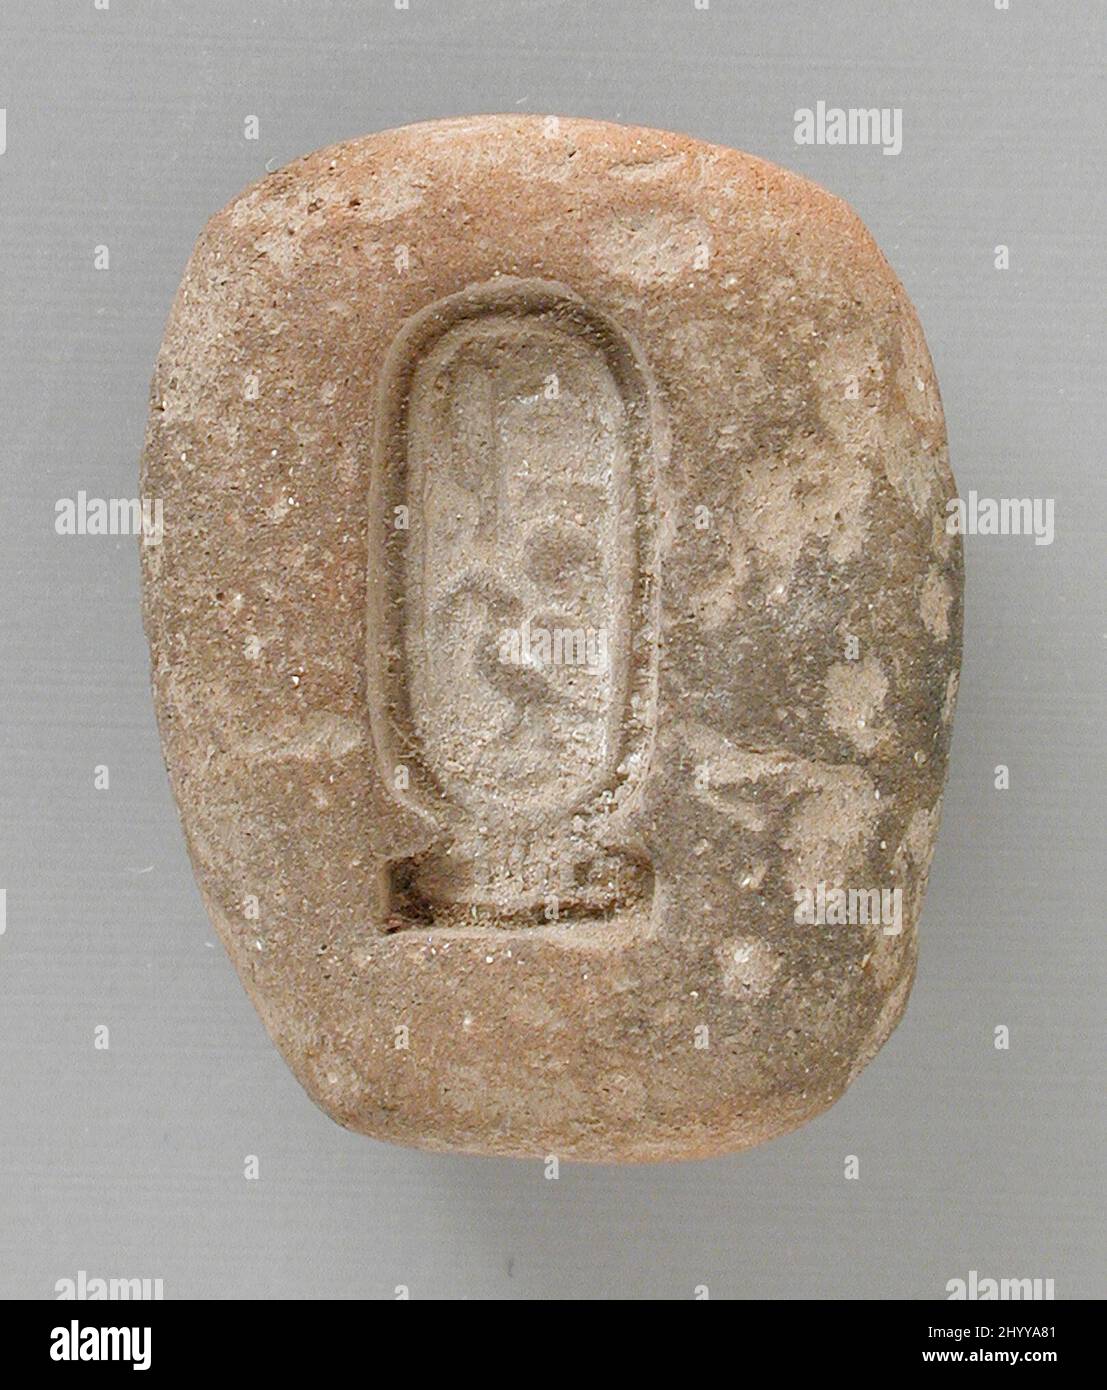 Moule avec cartouche d'Akhenaten. Égypte, Nouveau Royaume, dynastie 18th, règne d'Akhenaten (1372 - 1355 BCE). Outils et équipement; moules. Terre cuite Banque D'Images